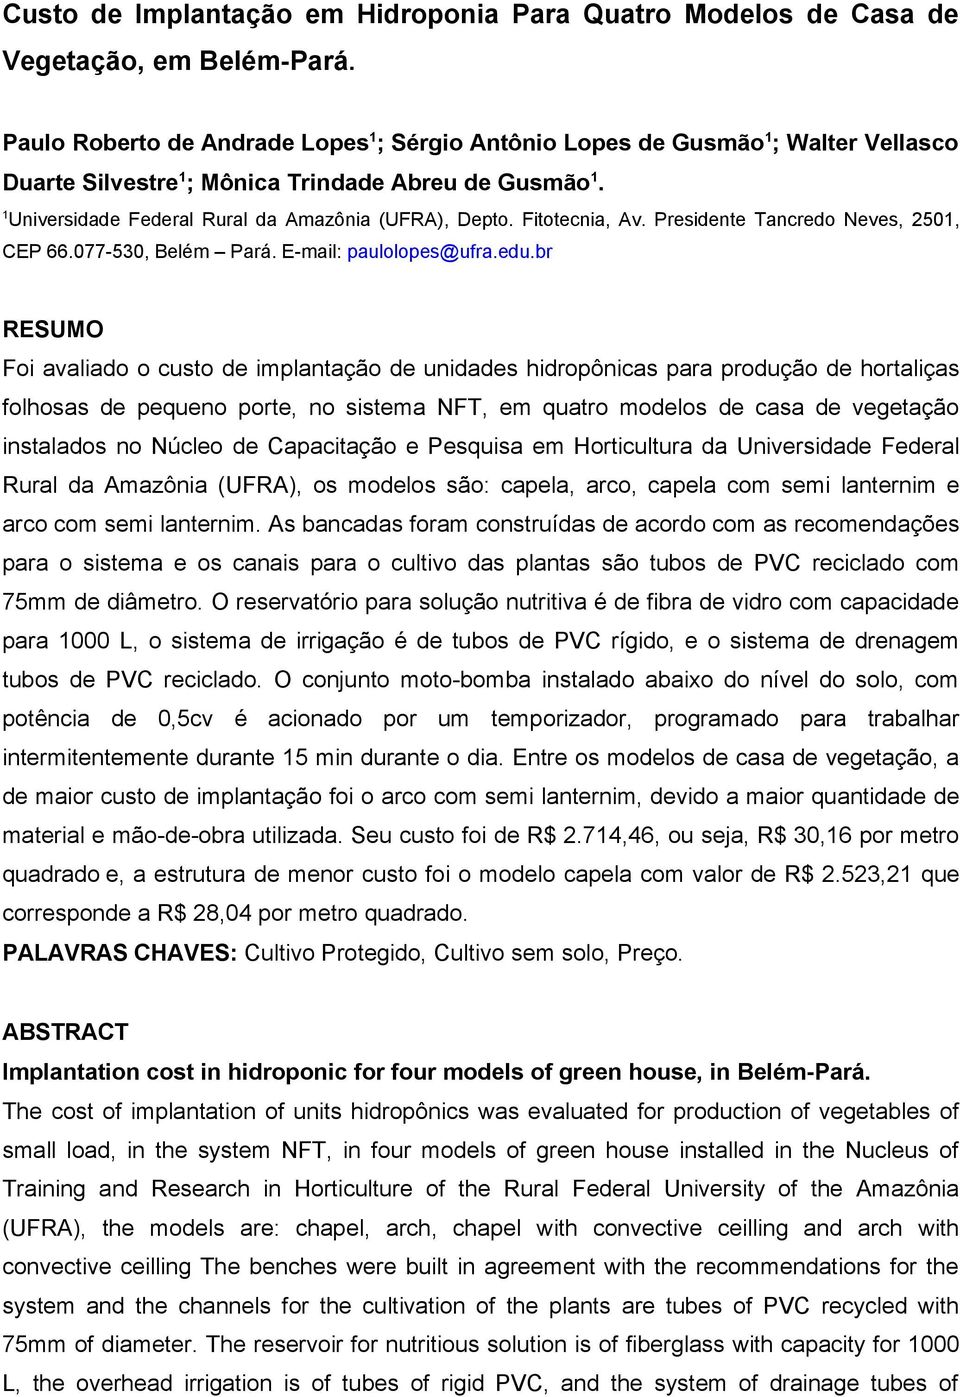 Fitotecnia, Av. Presidente Tancredo Neves, 2501, CEP 66.077-530, Belém Pará. E-mail: paulolopes@ufra.edu.